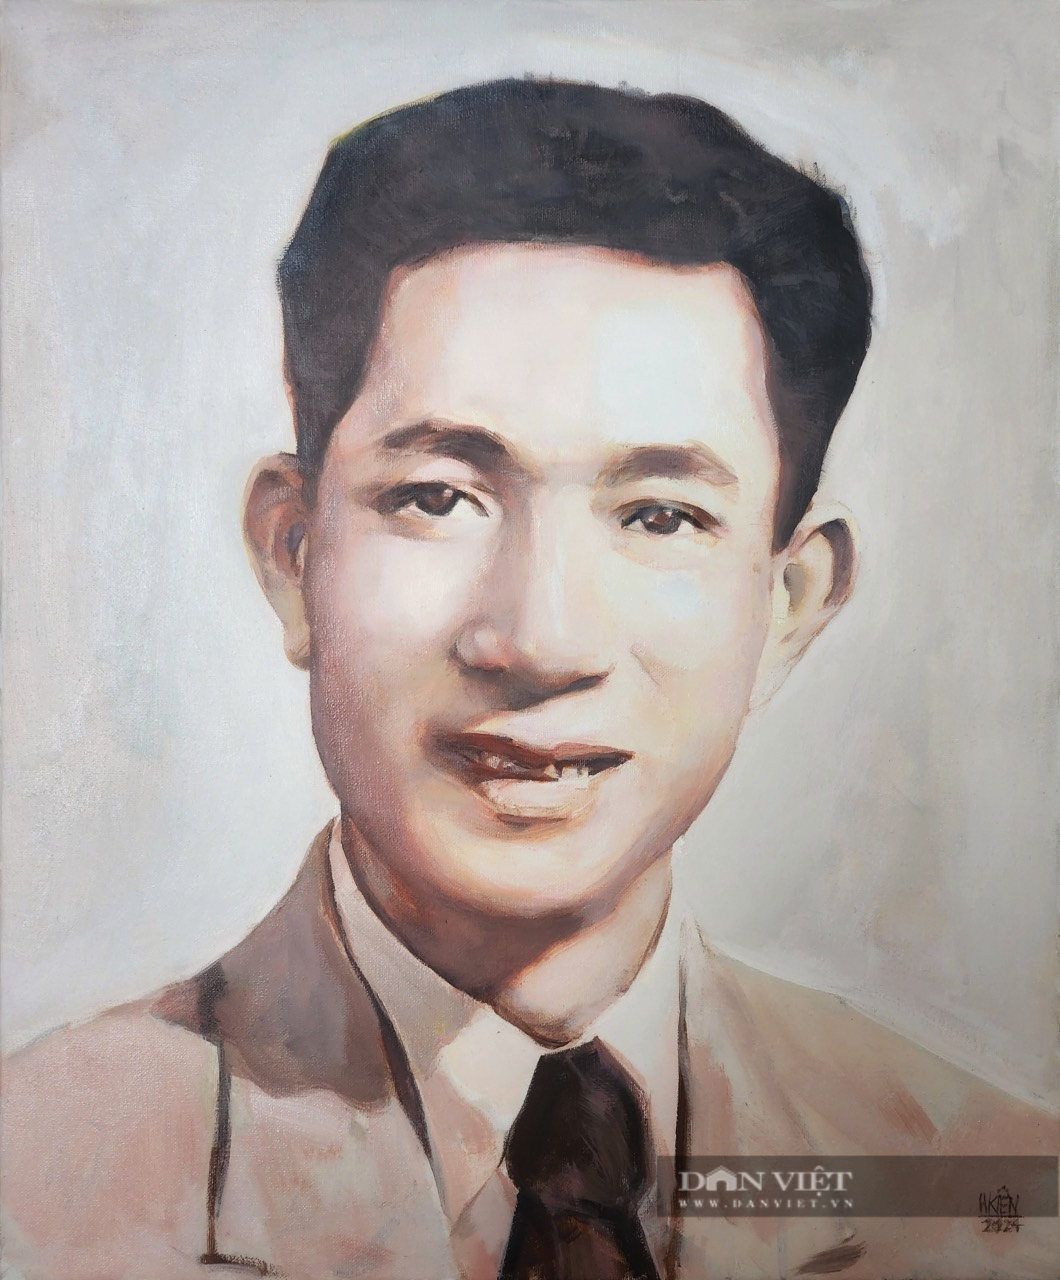 Triển lãm tranh vẽ về doanh nhân Phạm Nhật Vượng, Trương Gia Bình...- Ảnh 4.